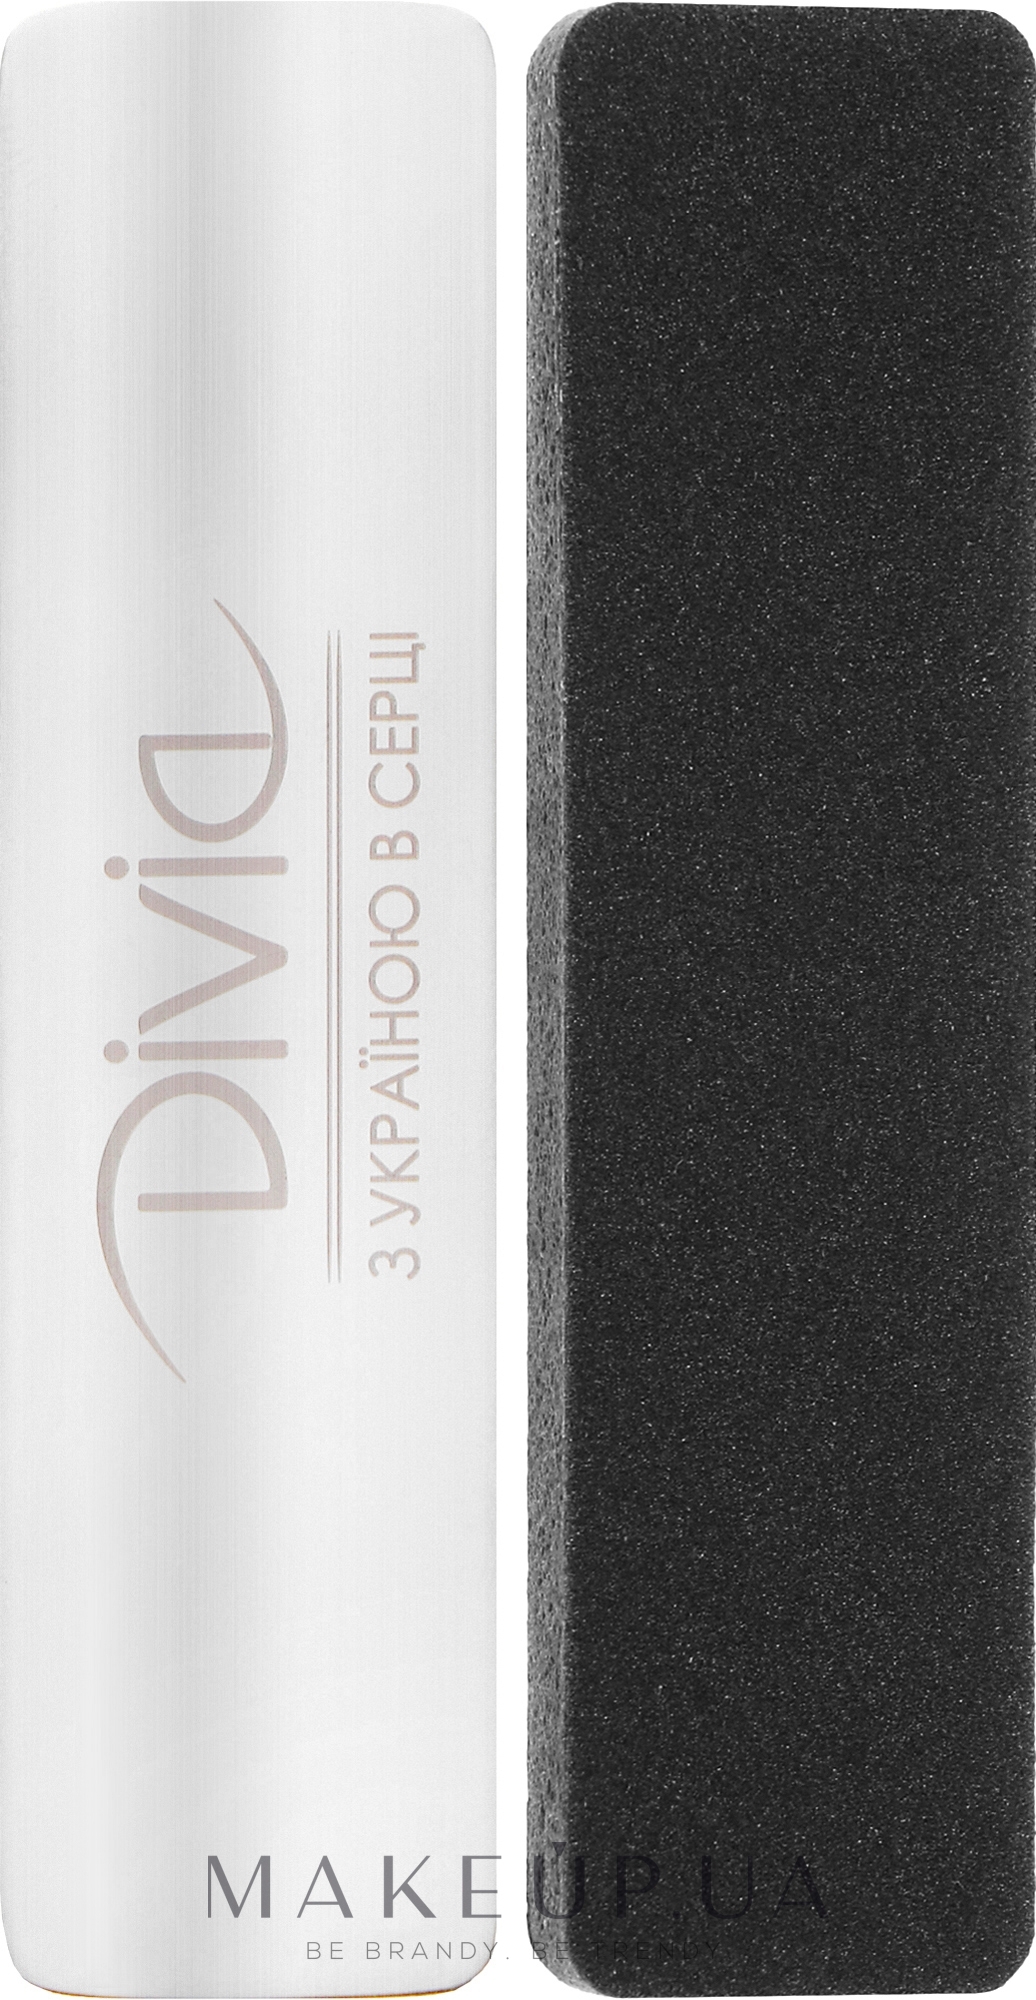 Основа металлическая Баф со сменными файлами, Di1523 - Divia  — фото 3шт